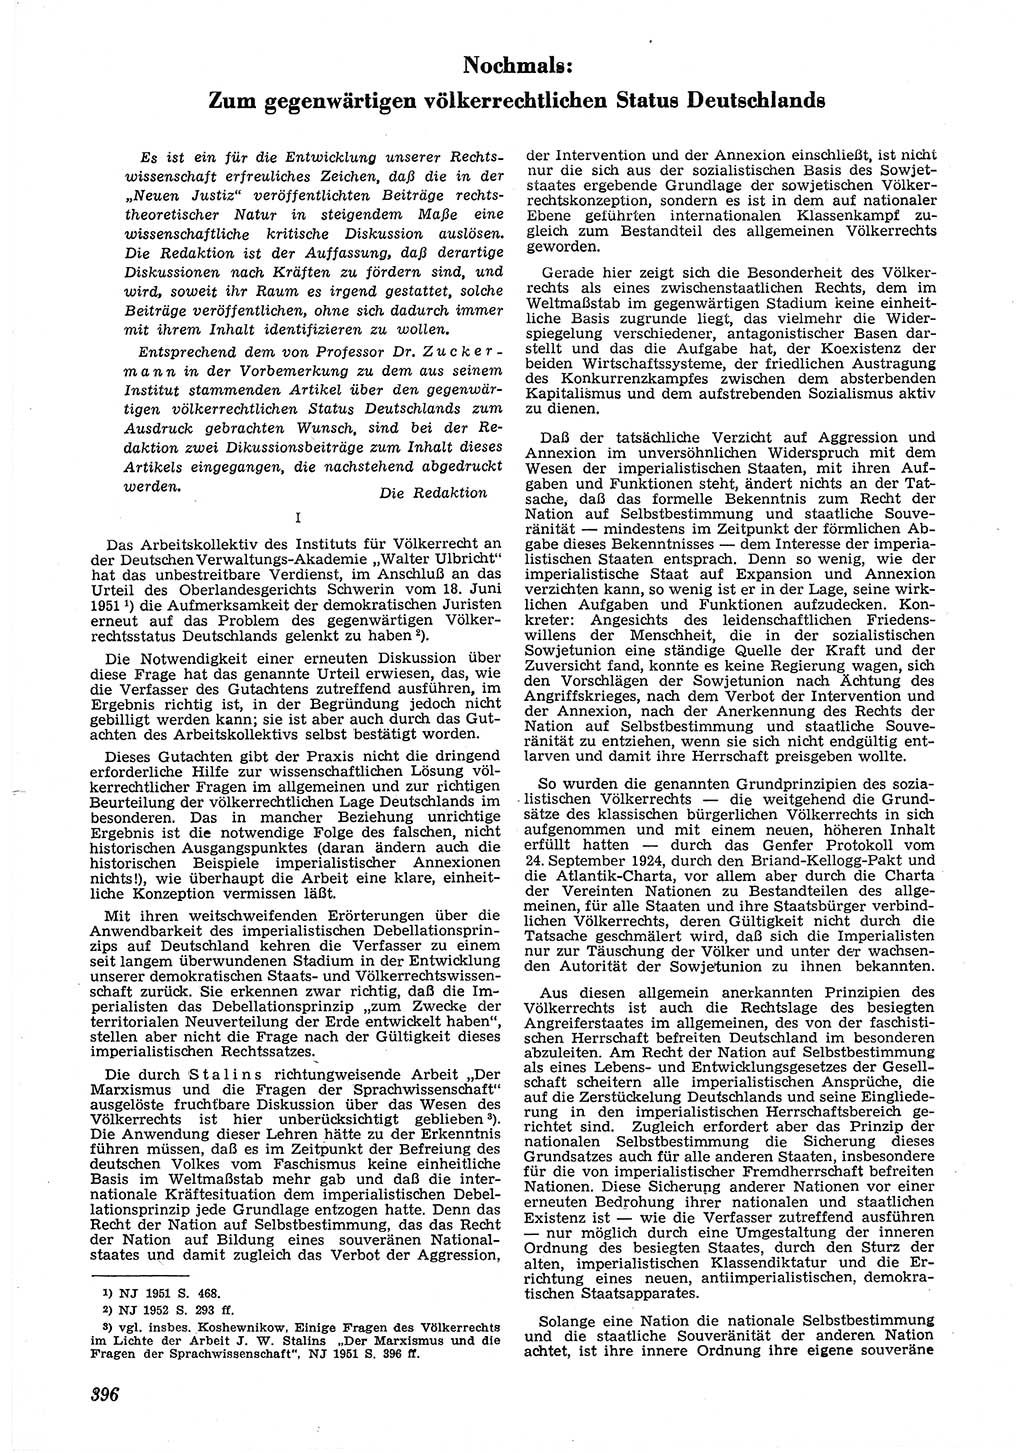 Neue Justiz (NJ), Zeitschrift für Recht und Rechtswissenschaft [Deutsche Demokratische Republik (DDR)], 6. Jahrgang 1952, Seite 396 (NJ DDR 1952, S. 396)